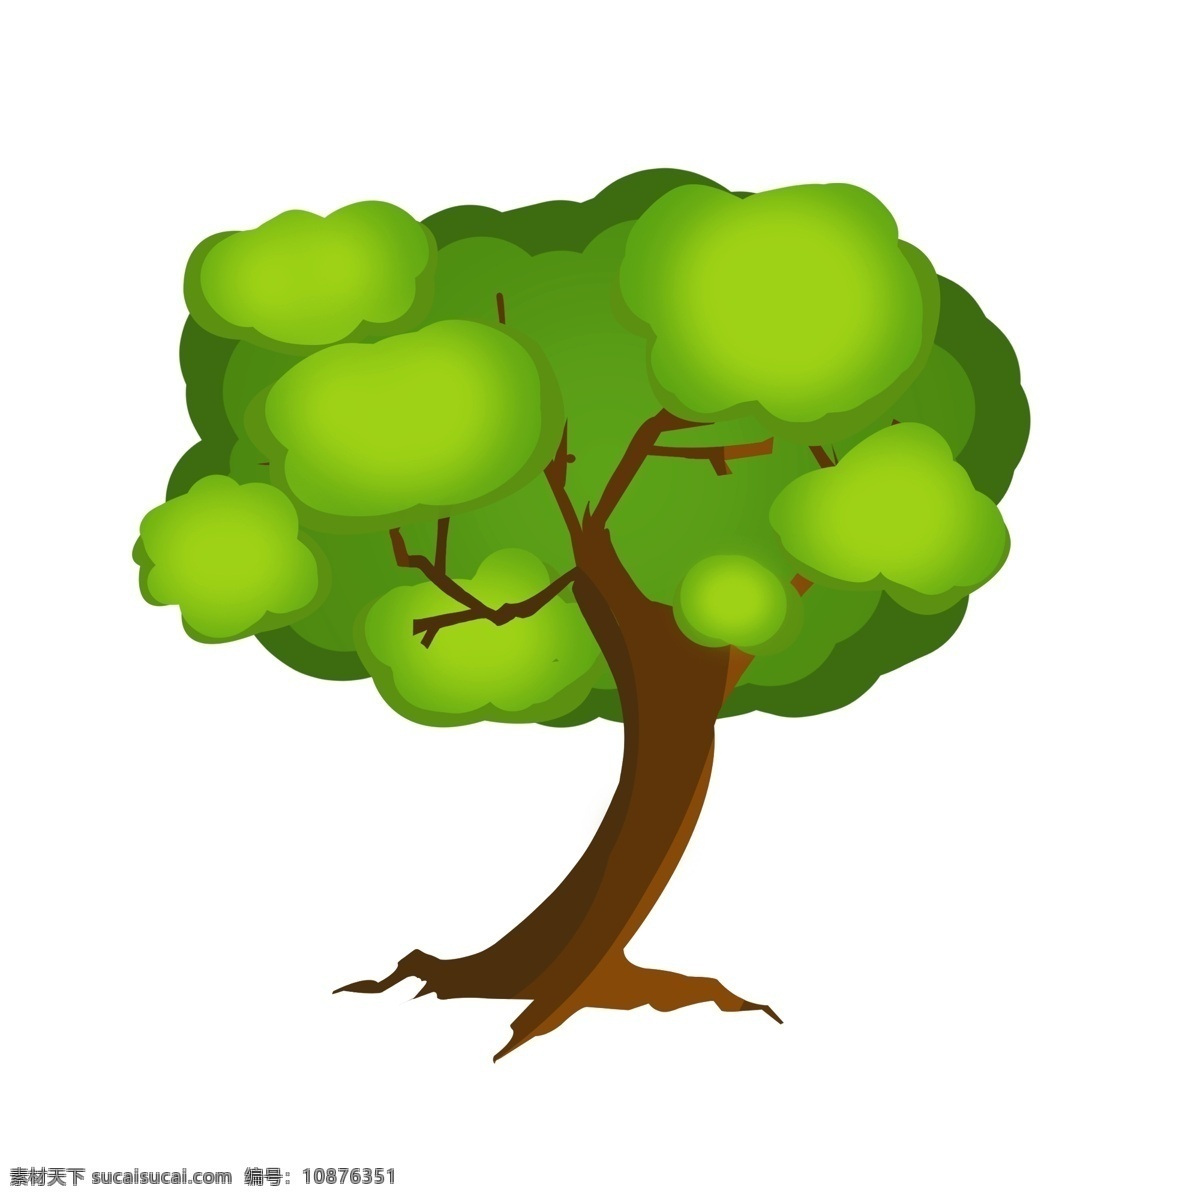 卡通 春天 常绿 大树 常绿大树 绿色的树木 长青 成长 植物 树木 绿化 环境 公园 绿植 植树节